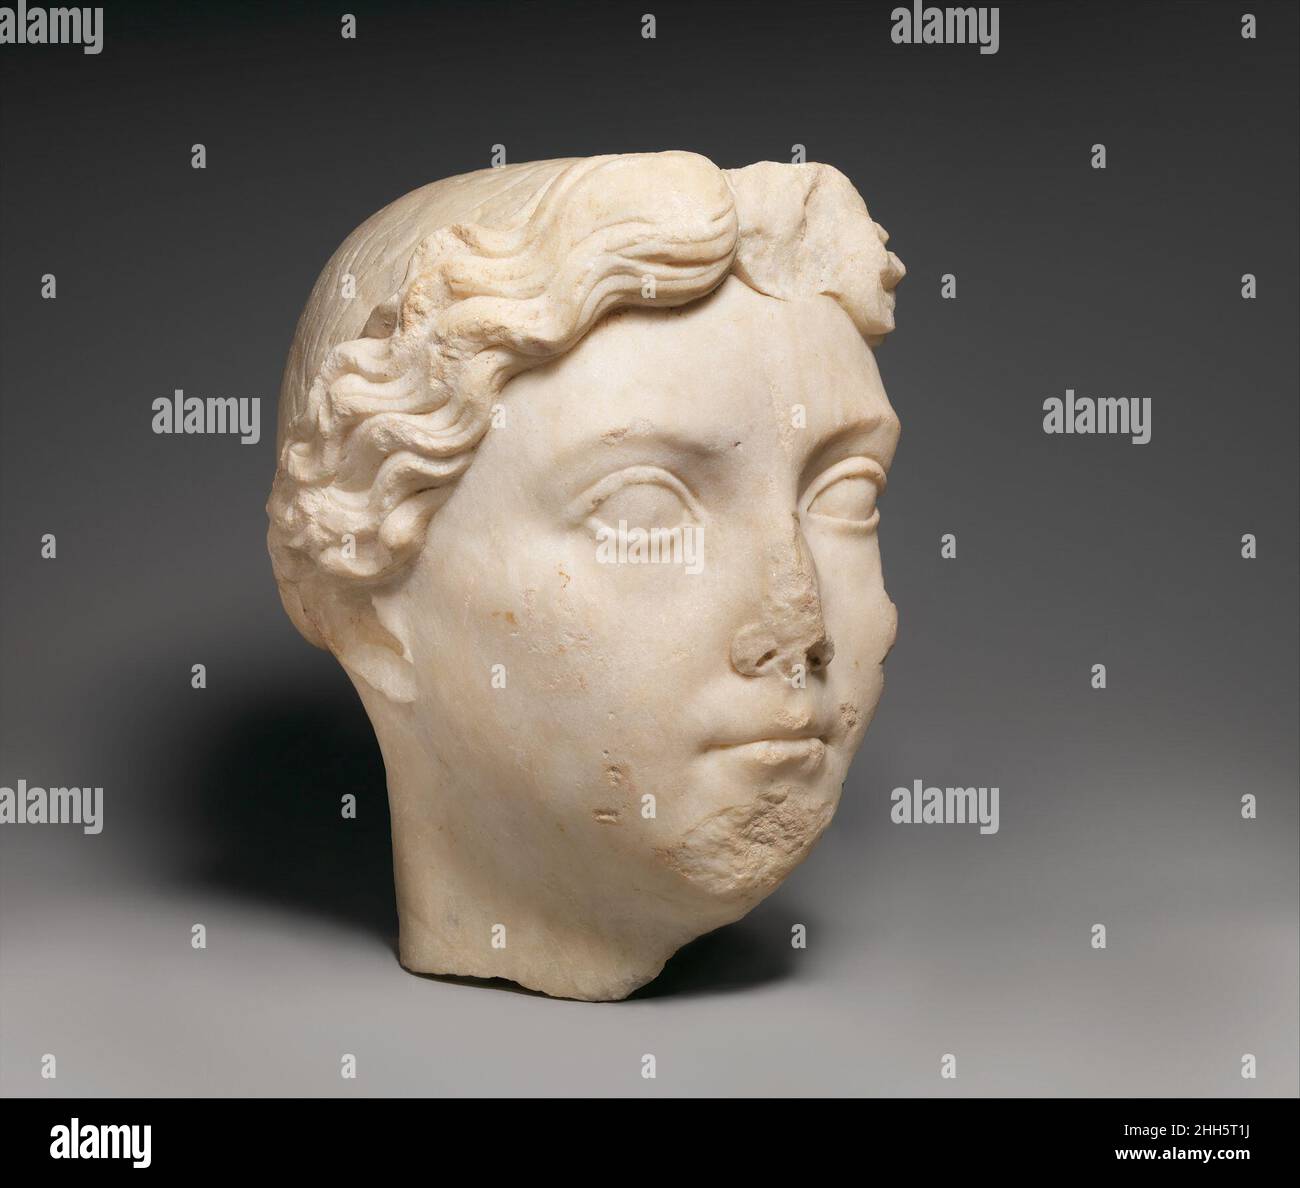 Ritratto in marmo di Livia ca. A.D. 14–37 Roman questa testa ben eseguita non cerca di essere un ritratto realistico, ma raffigura Livia come una figura idealizzata e giovanile. Nata nel 58 a.C., Livia sarebbe stata nel suo 70s o 80s quando fu scolpita, probabilmente nel regno di suo figlio, Tiberio. Come moglie dell'imperatore Augusto, esercitò un'enorme influenza sulla corte imperiale e, anche dopo la sua morte nel 14 d.C., mantenne il suo prestigio per associazione con Augusto deificato, l'imperatore al governo Tiberio e gli altri suoi discendenti, che includevano i futuri imperatori, Gaio (Caligula), Claudio e Ner Foto Stock